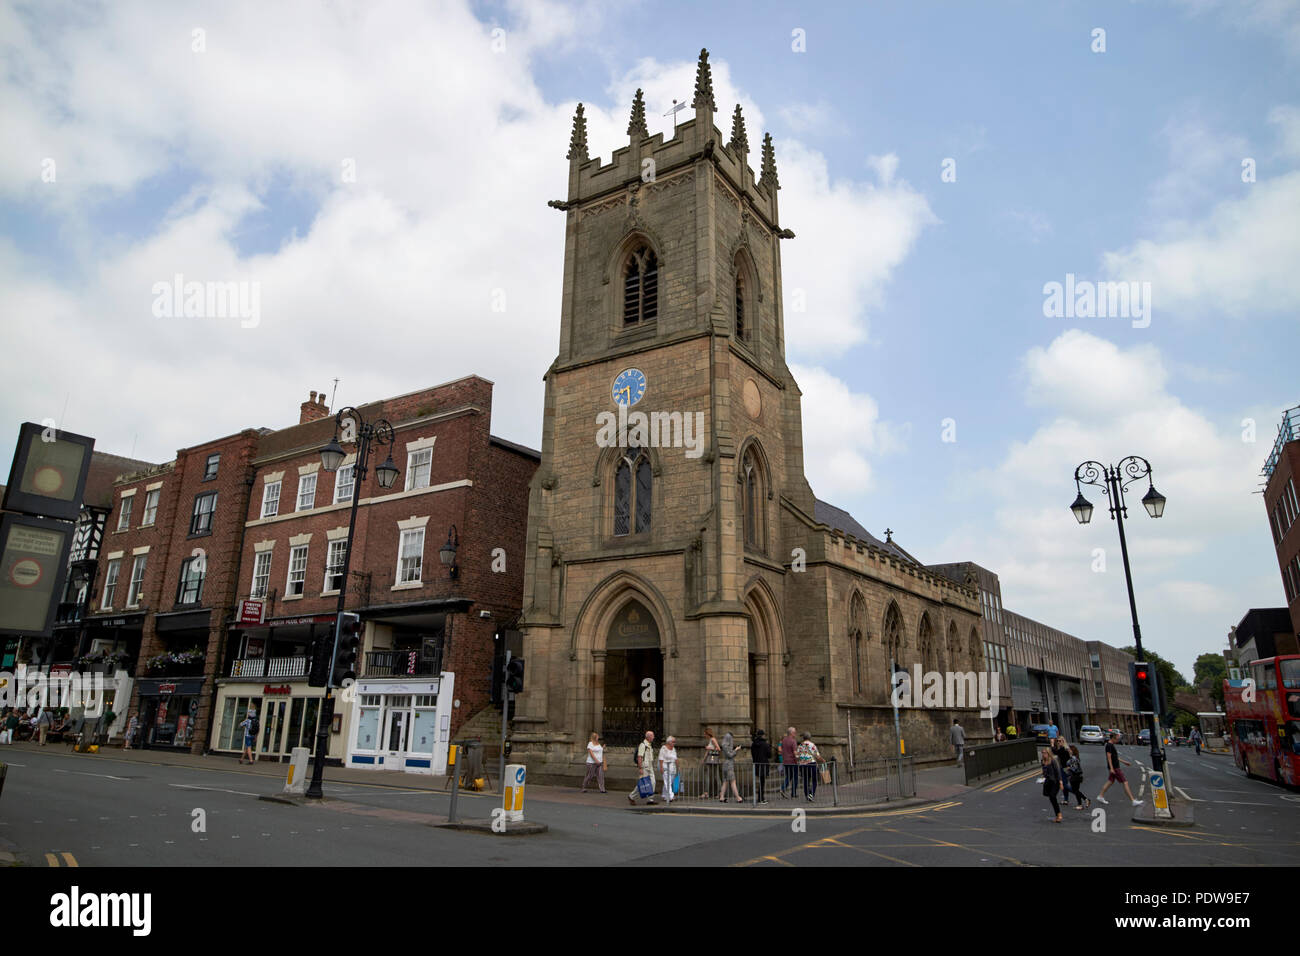 Histoire de Chester et Heritage Museum de St Michaels church, à l'angle de la rue Bridge et le poivre st chester cheshire england uk Banque D'Images